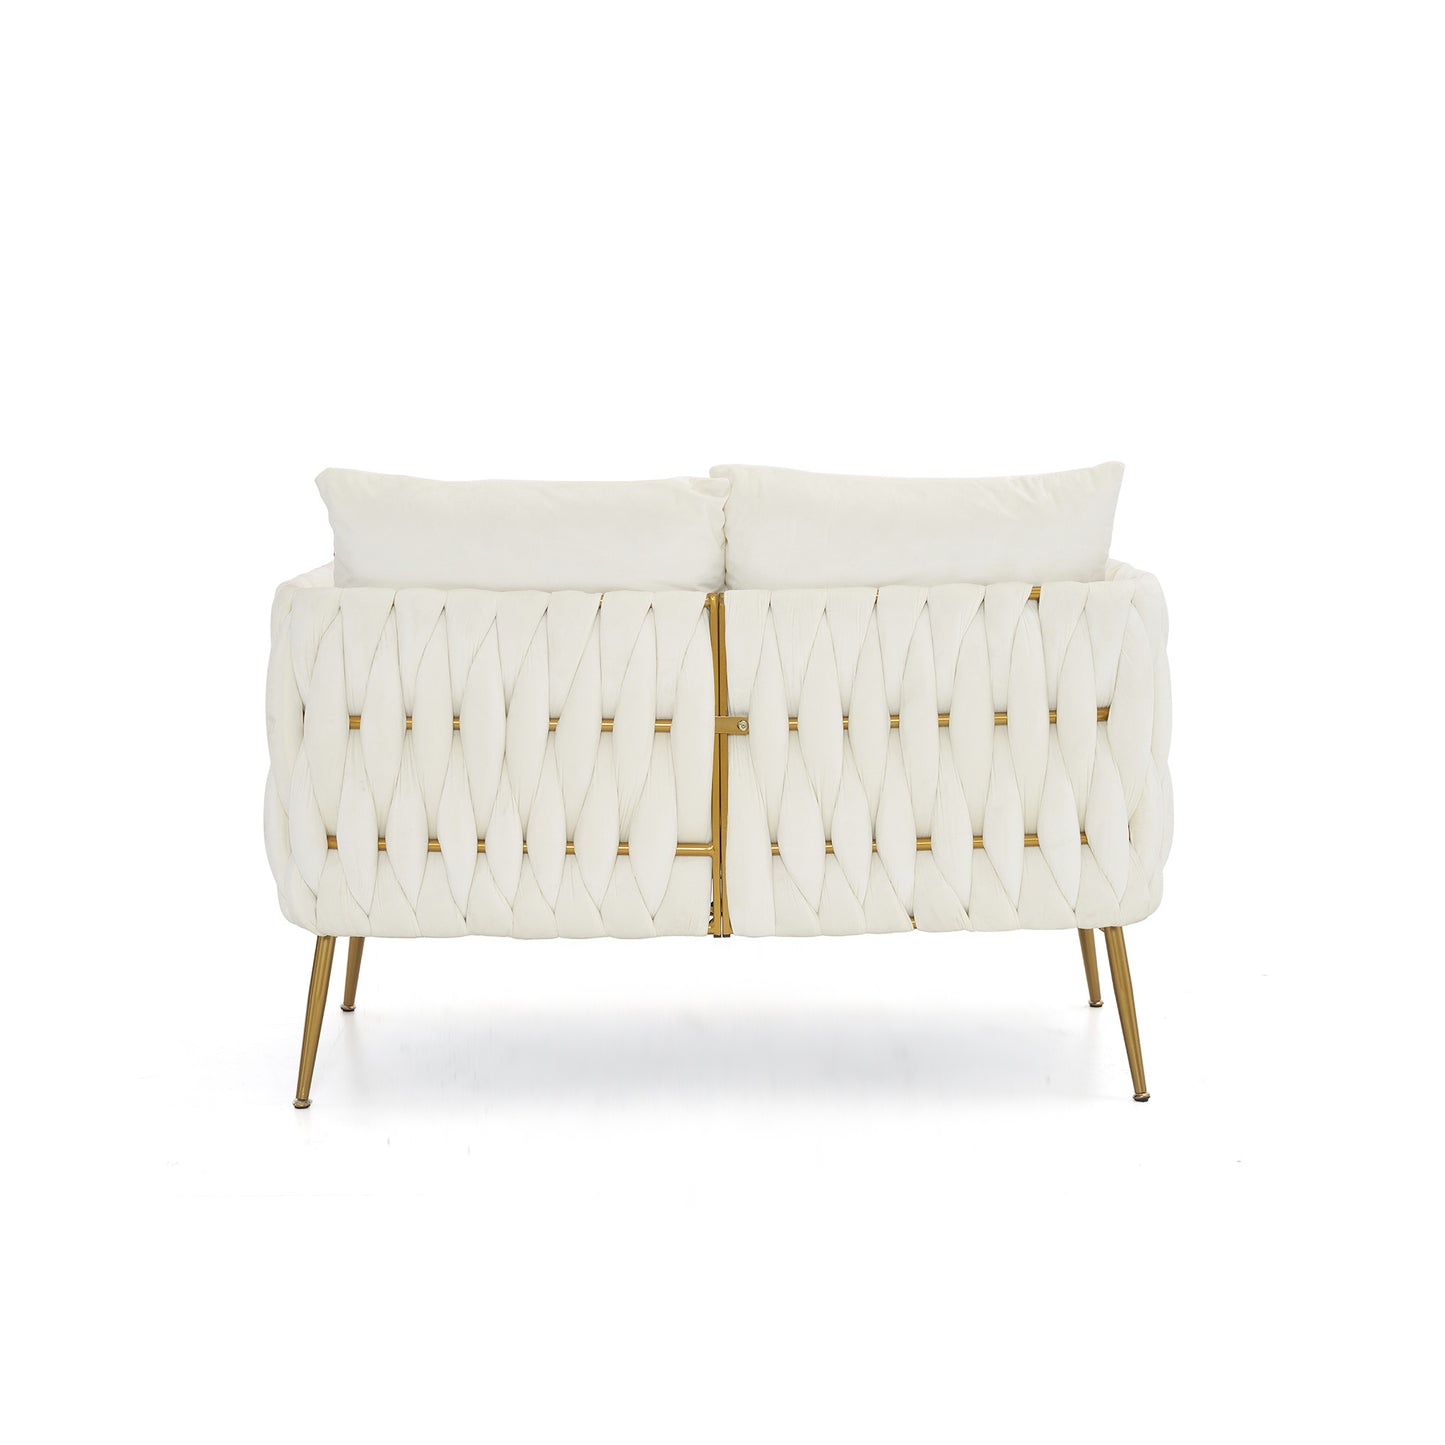 3 piece modern velvet upholstered set, cream white velvet